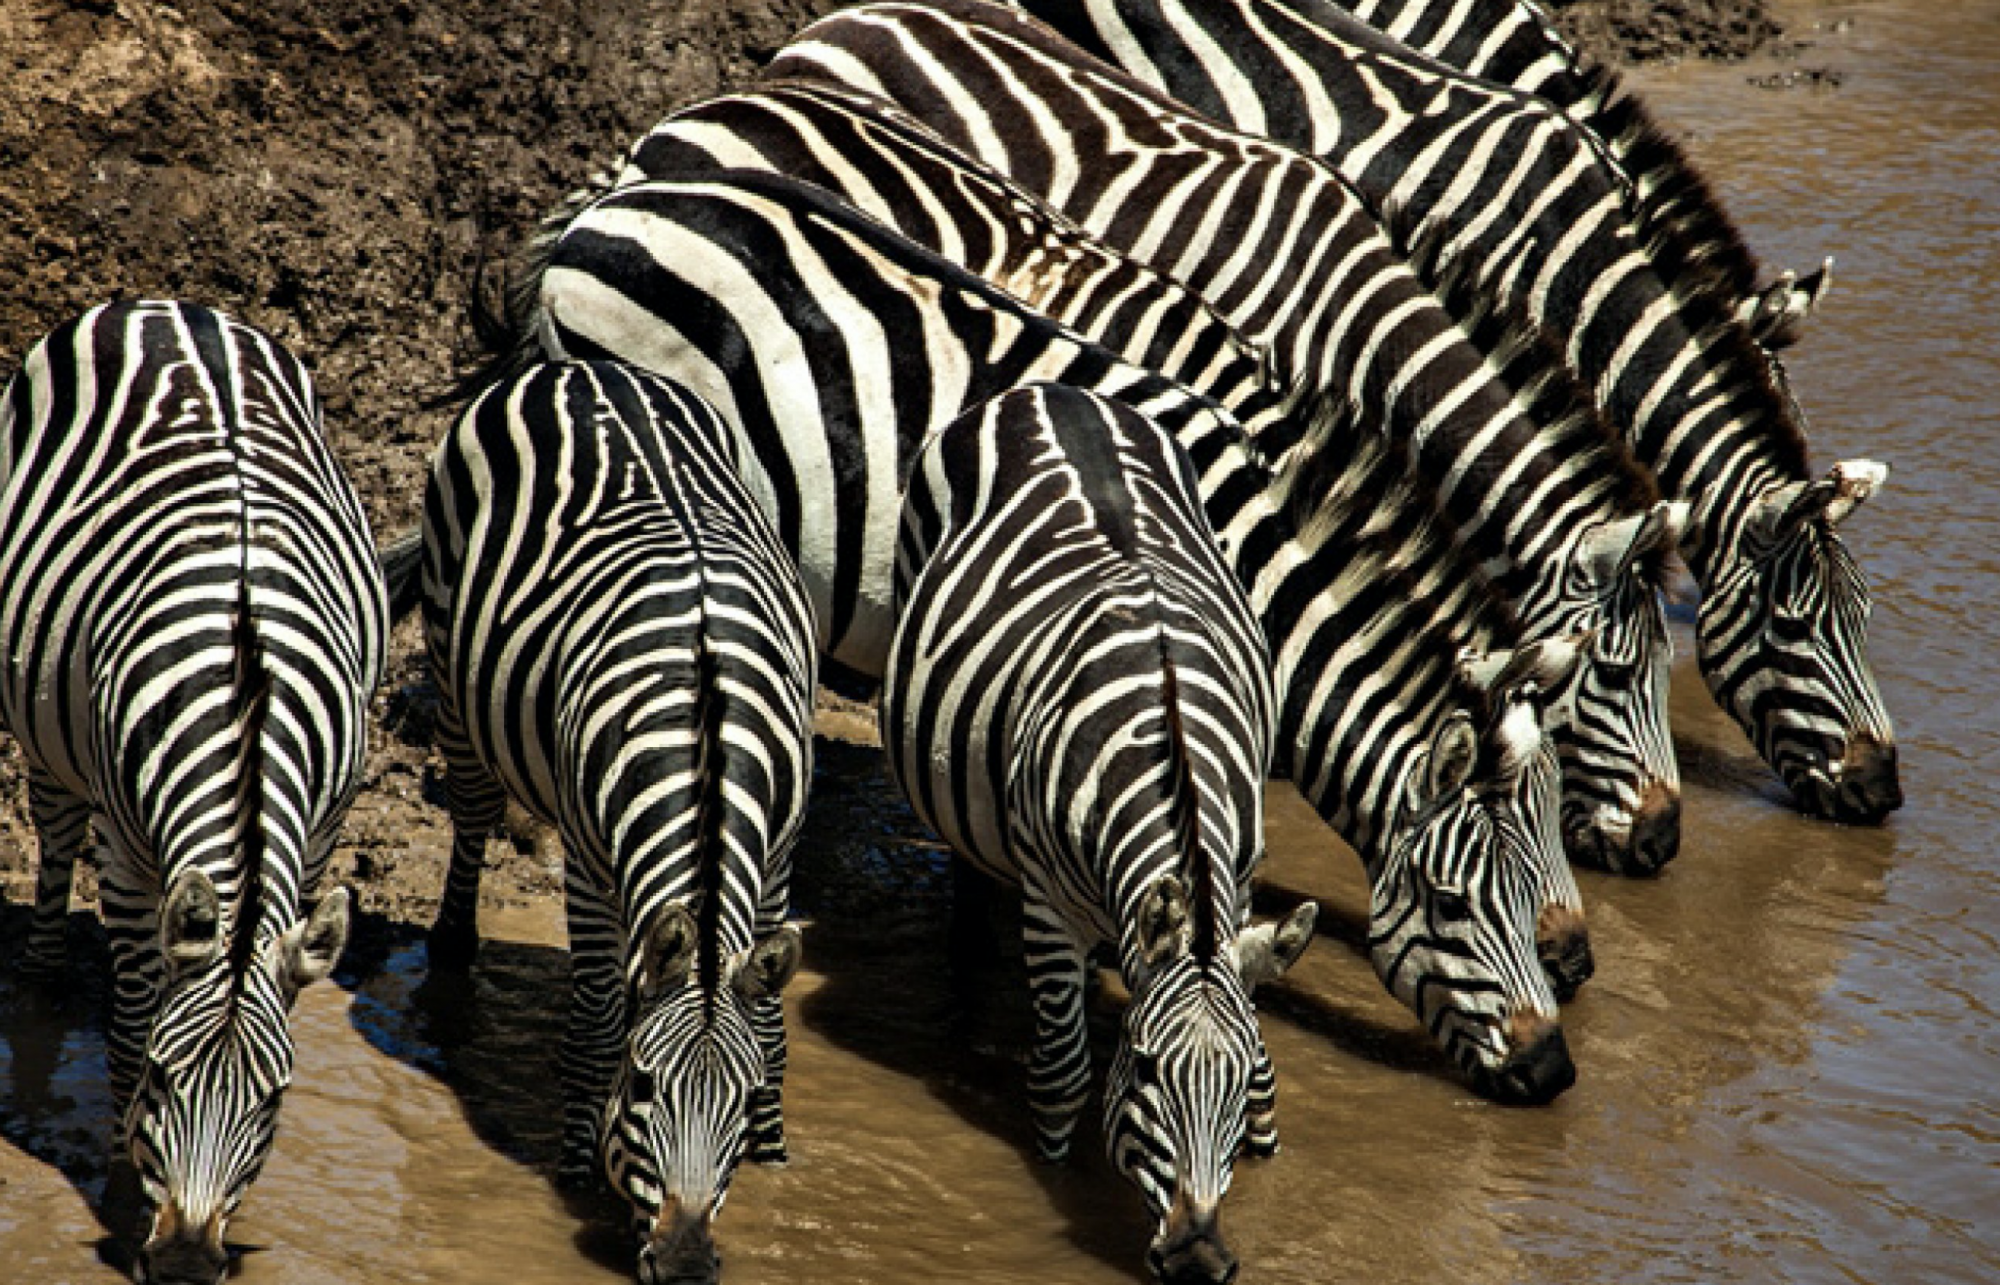 Zebry se v Masai Mara pohybují ve velkých stádech